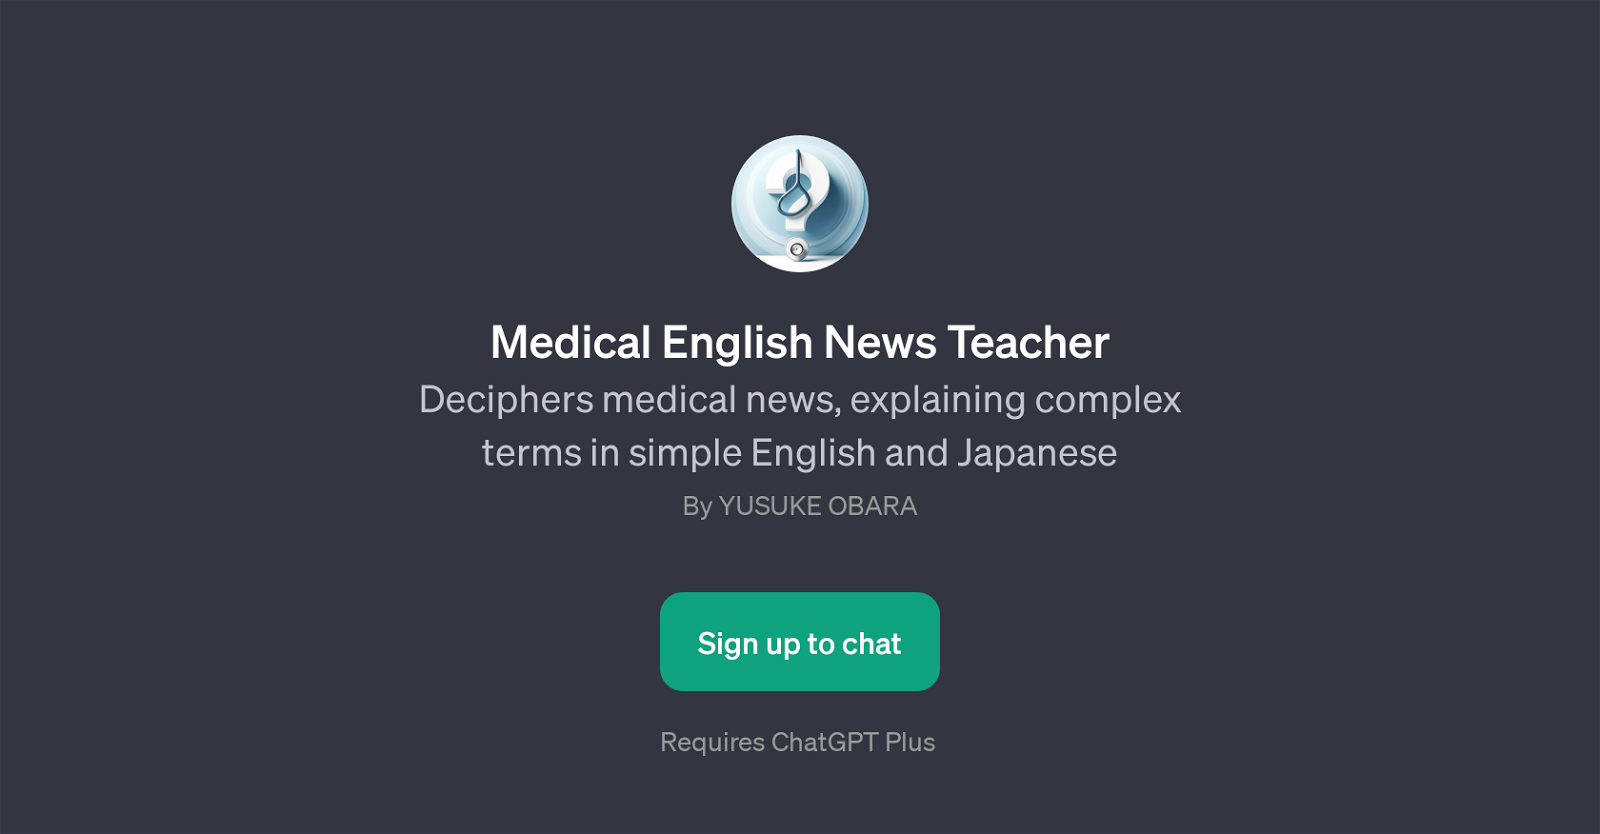 Medical English News Teacher website